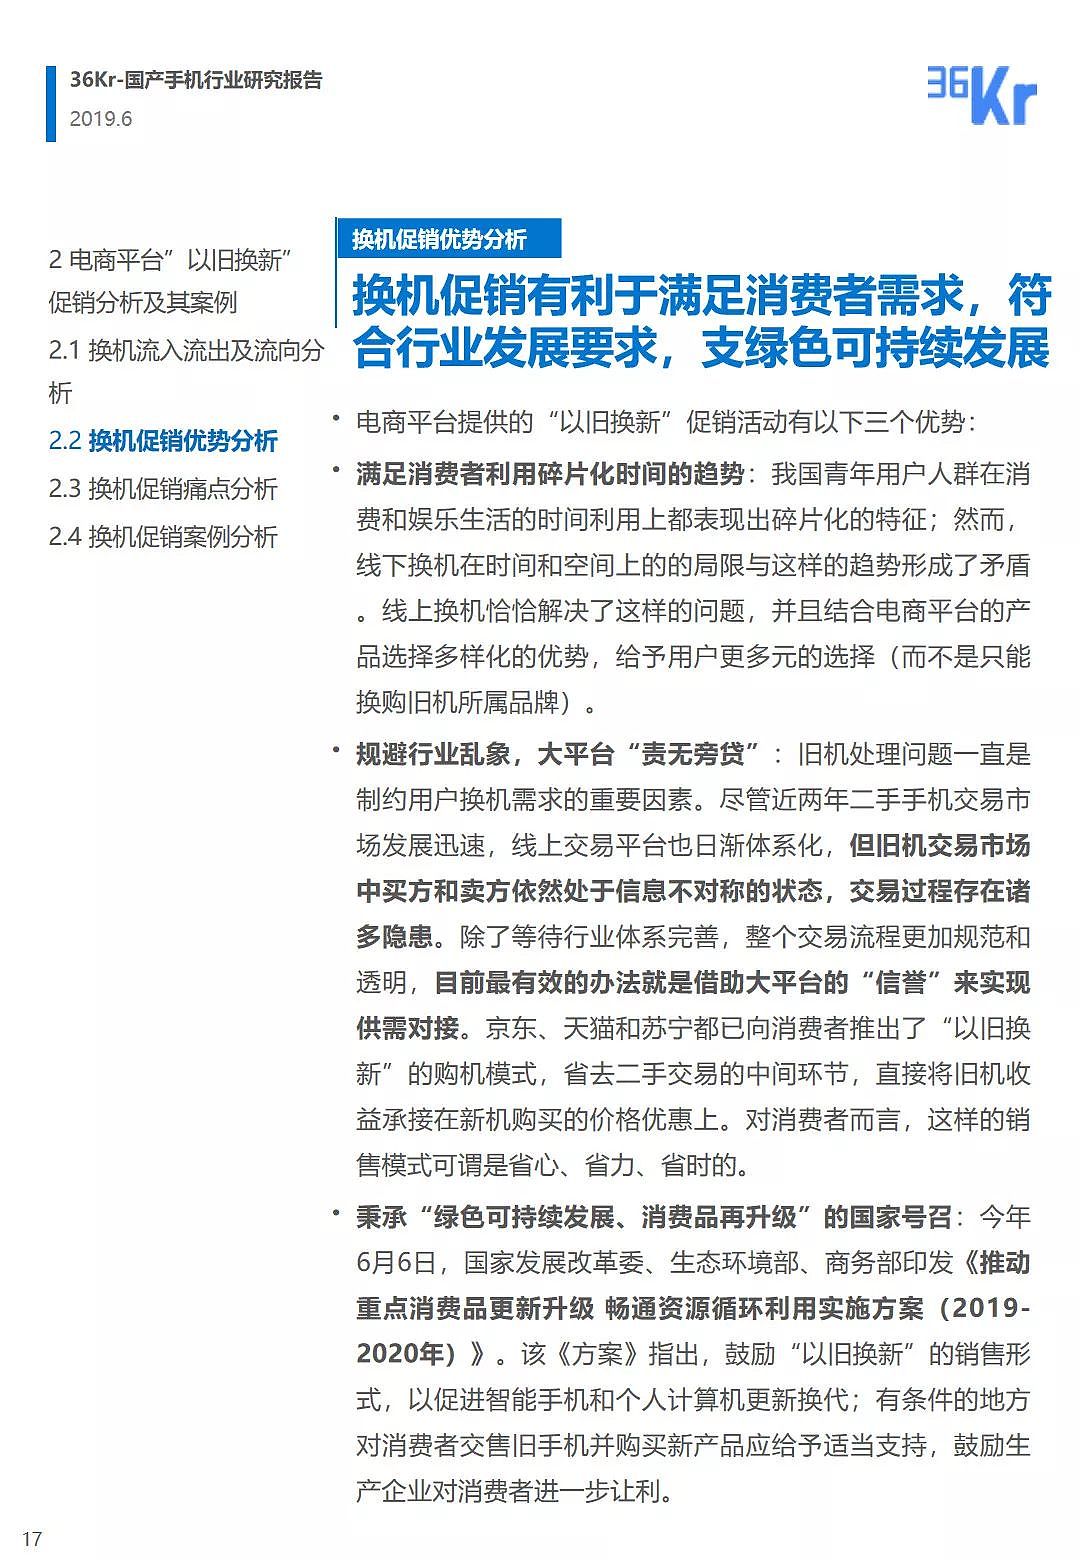 中国手机品牌市场营销研究报告 | 36氪研究 - 18